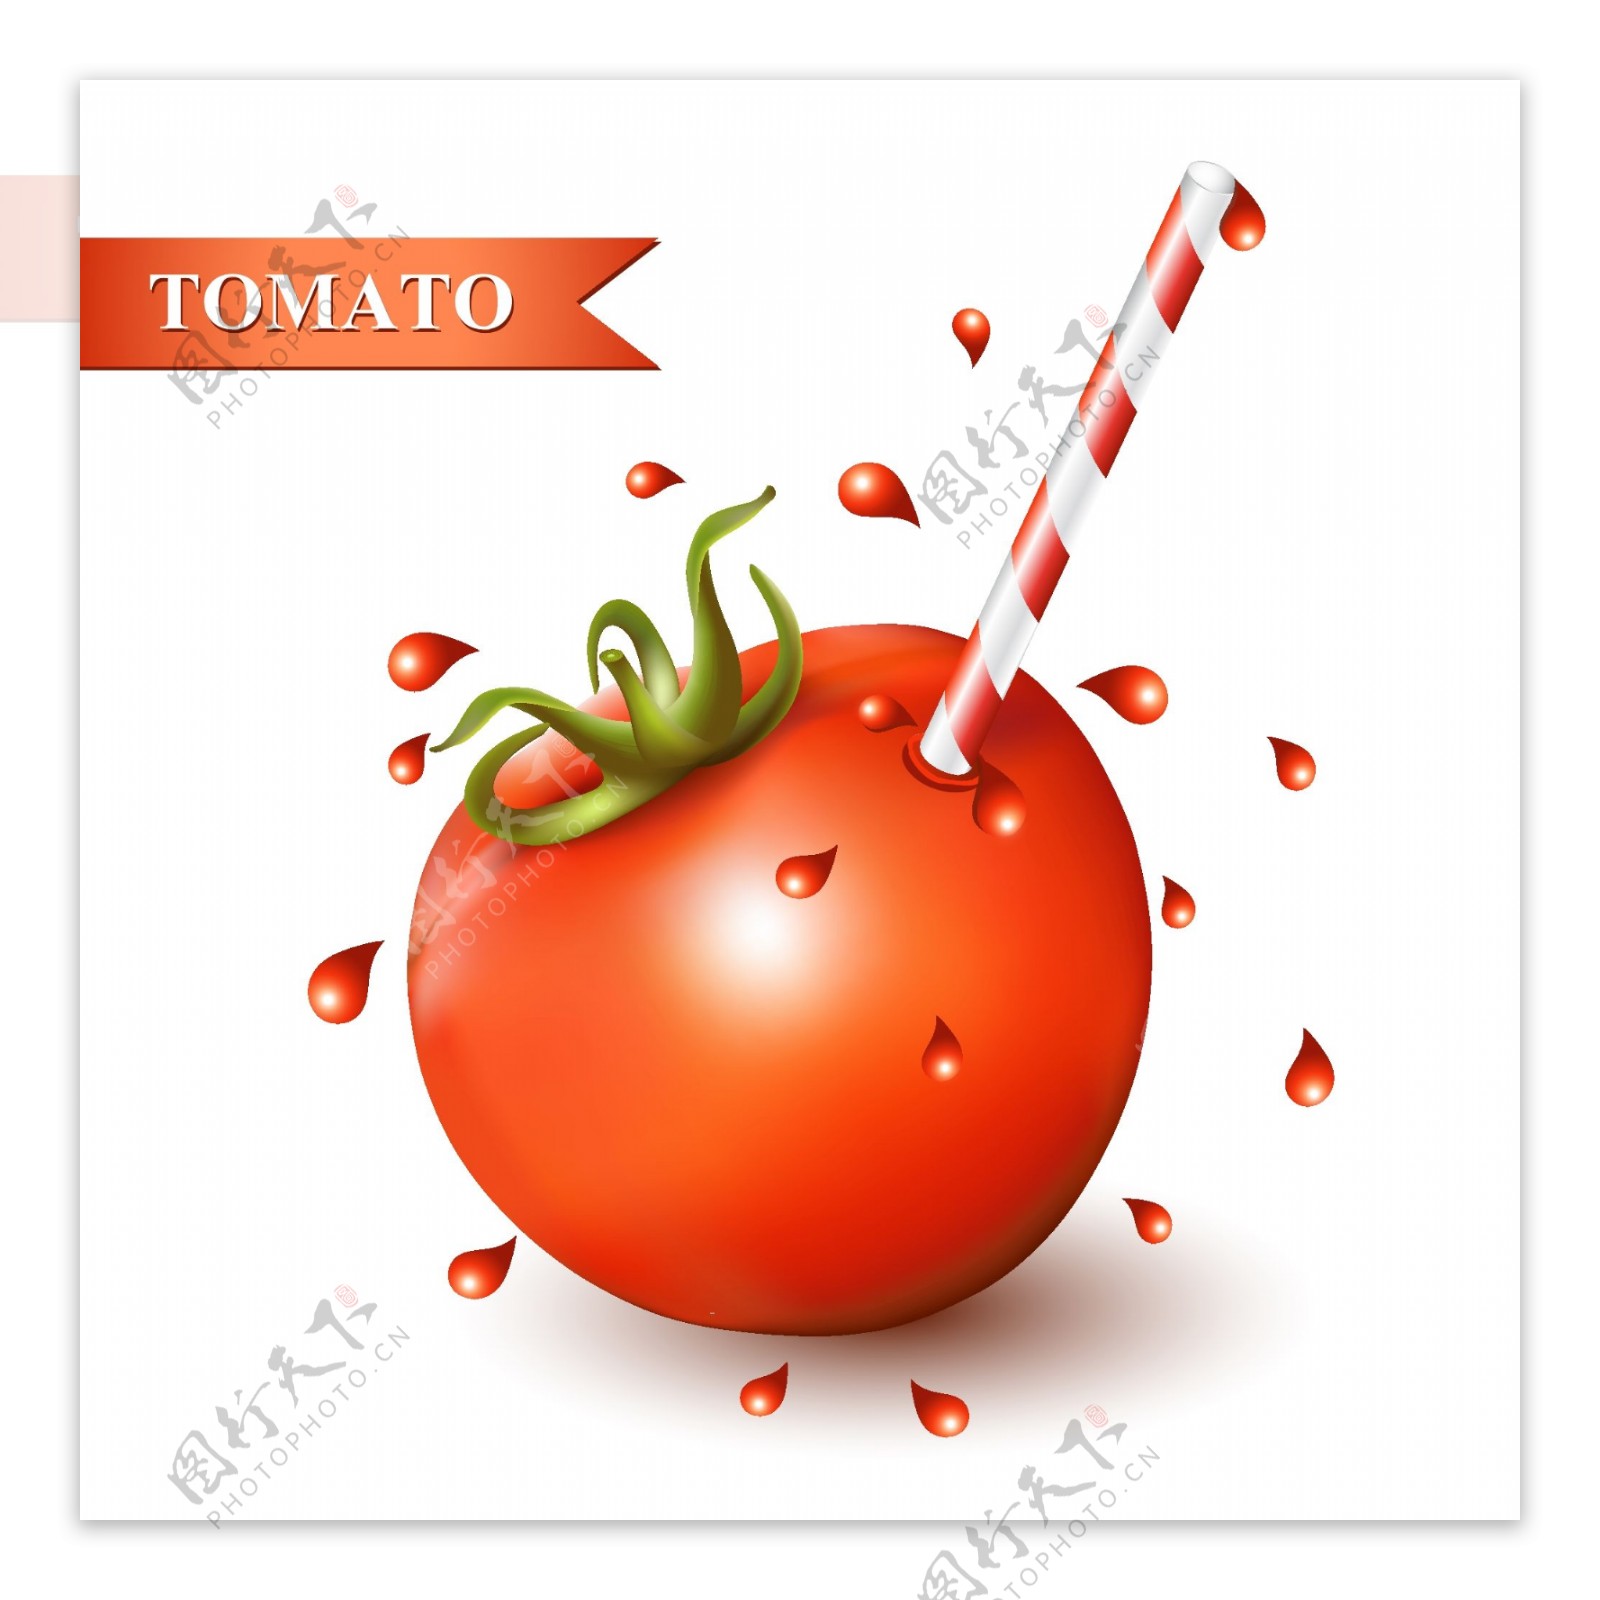 番茄西红柿蔬菜矢量素材